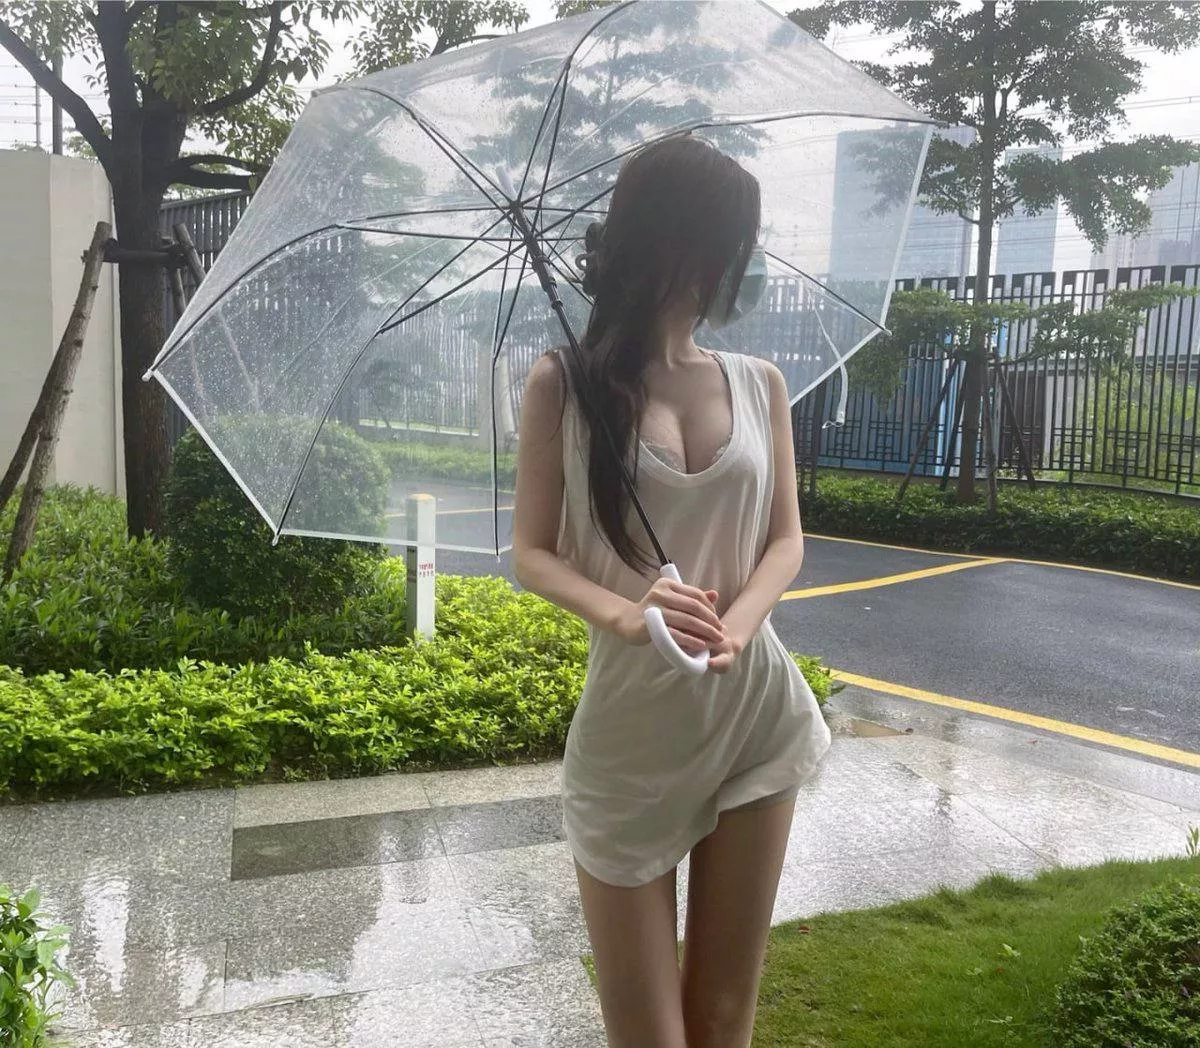 hujan Bust indah. payung transparan